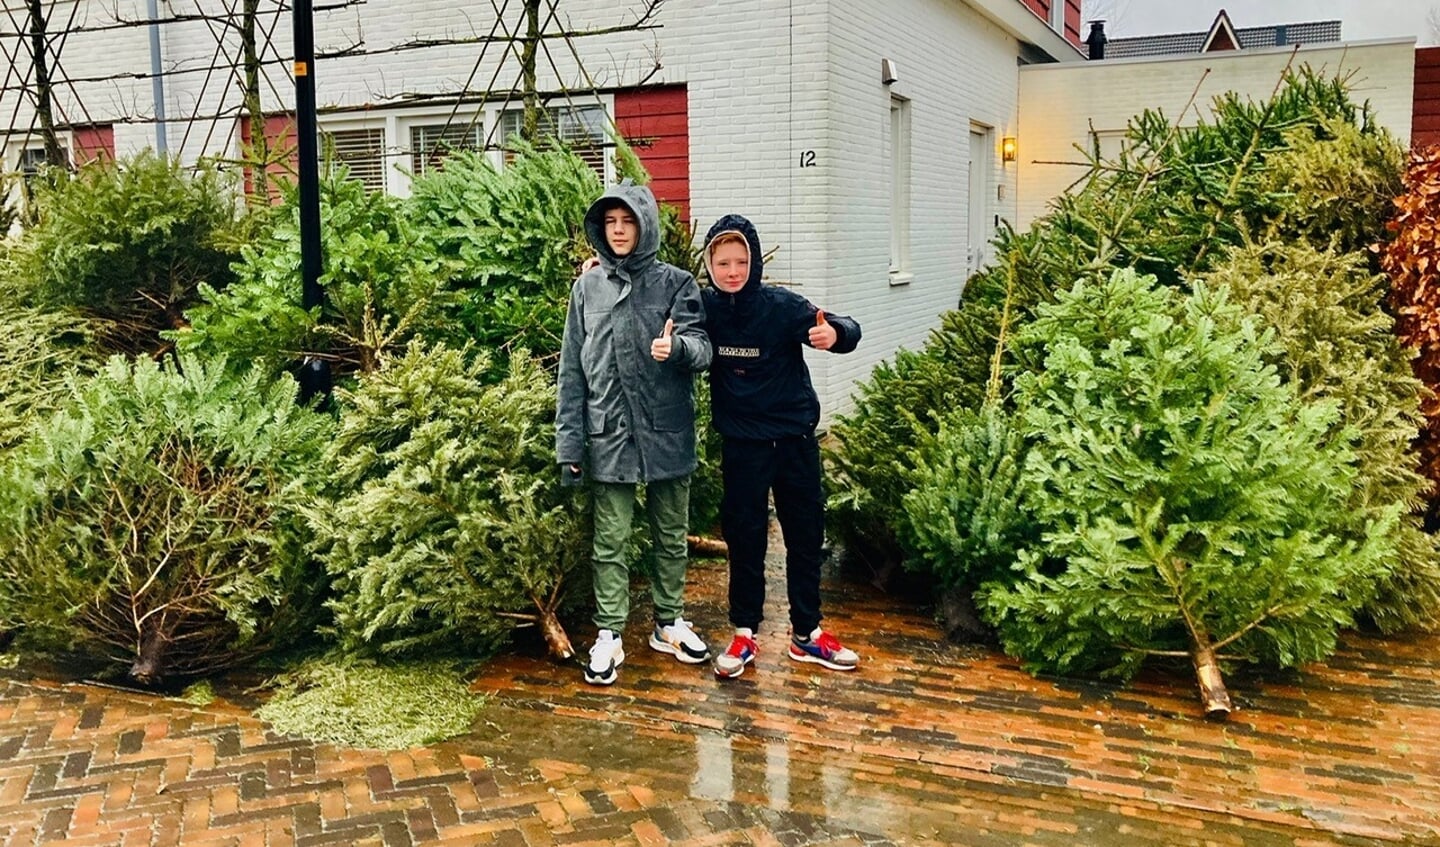 Senna en Luca uit Nobelhorst zamelden 90 kerstbomen in. (Foto: aangeleverd)